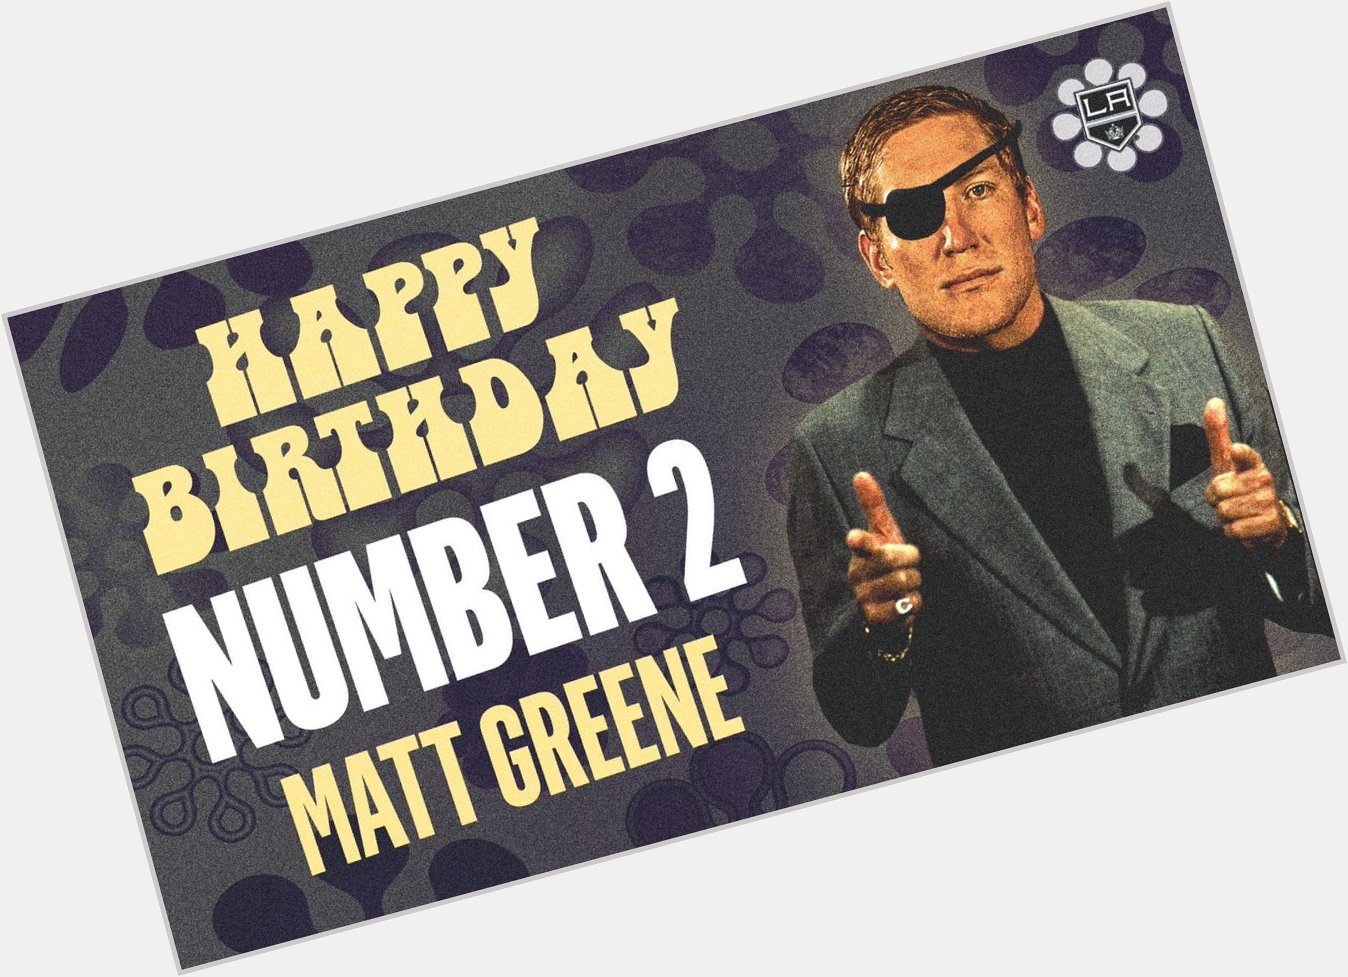  RT\"Happy birthday, Matt Greene!  